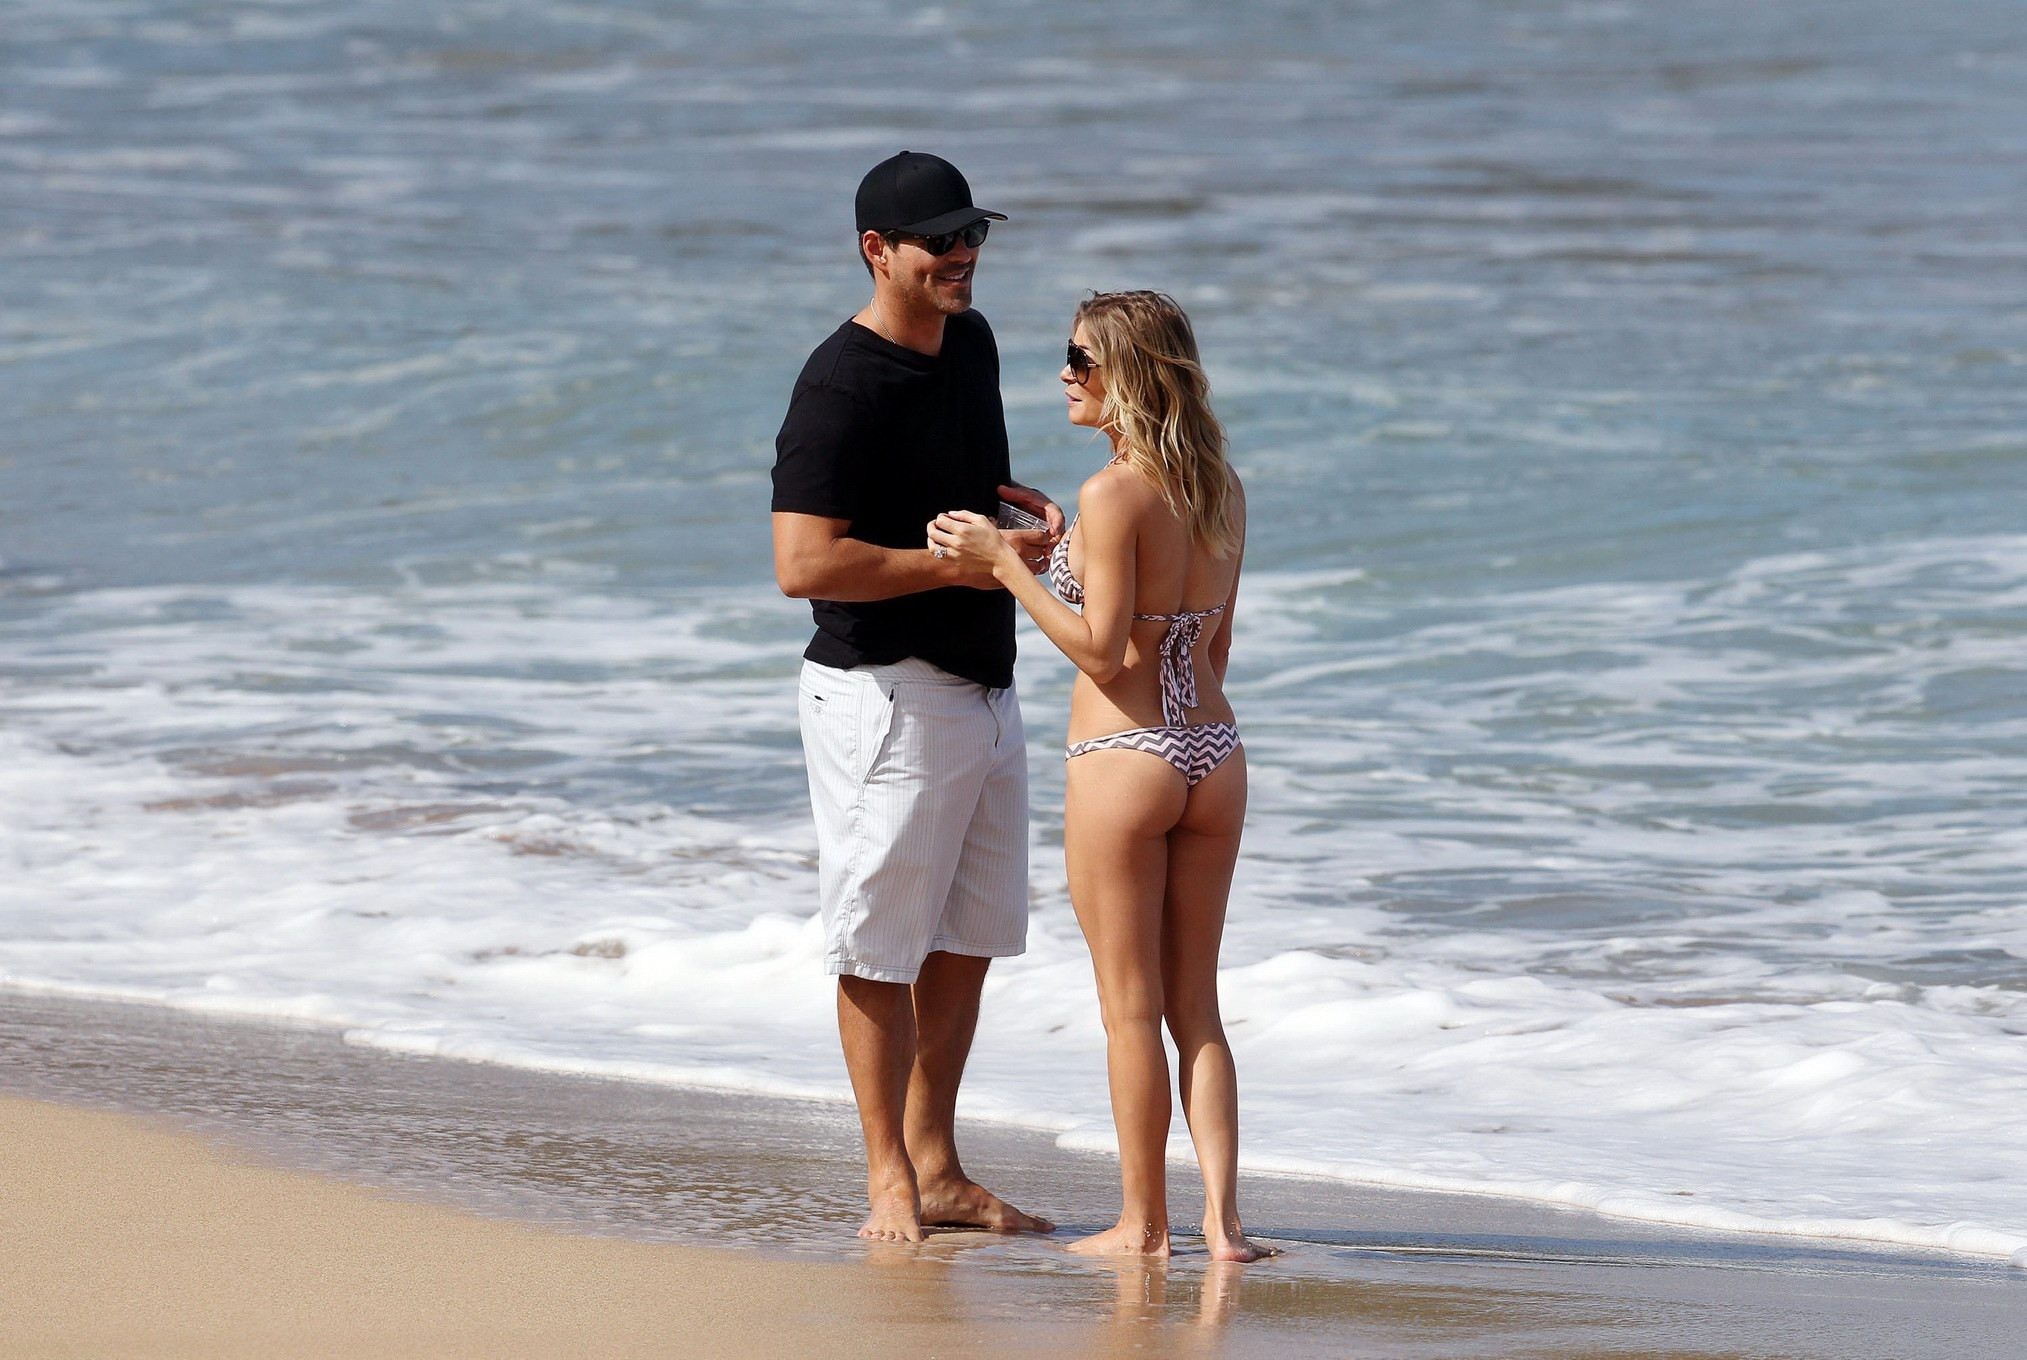 Leann rimes en bikini acariciando con su marido en una playa de hawaii
 #75276918